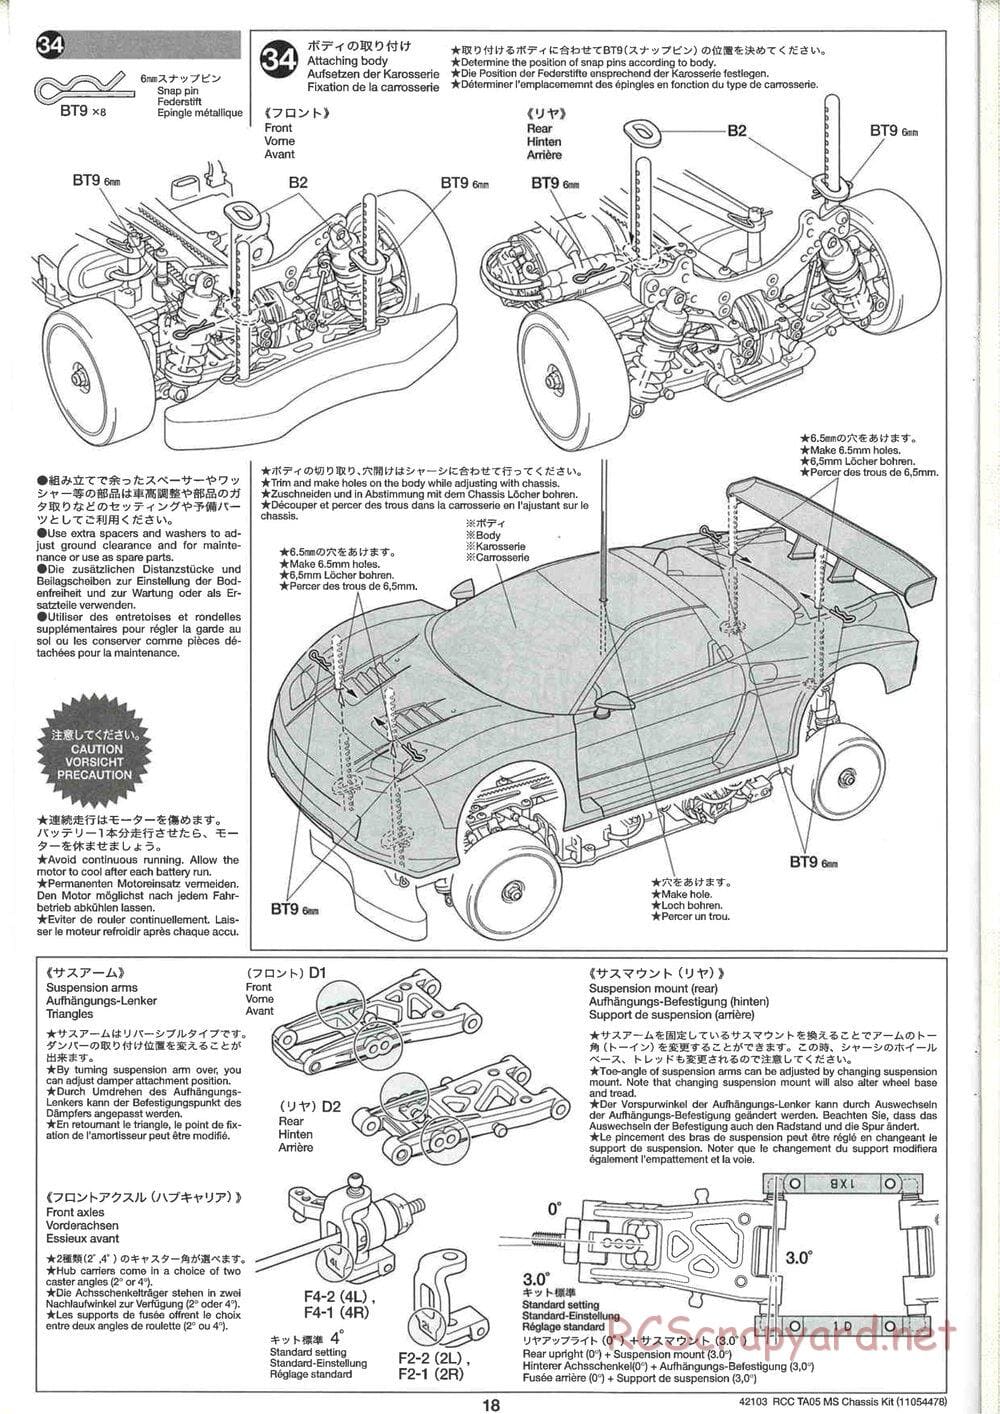 Tamiya - TA05 MS Chassis - Manual - Page 18